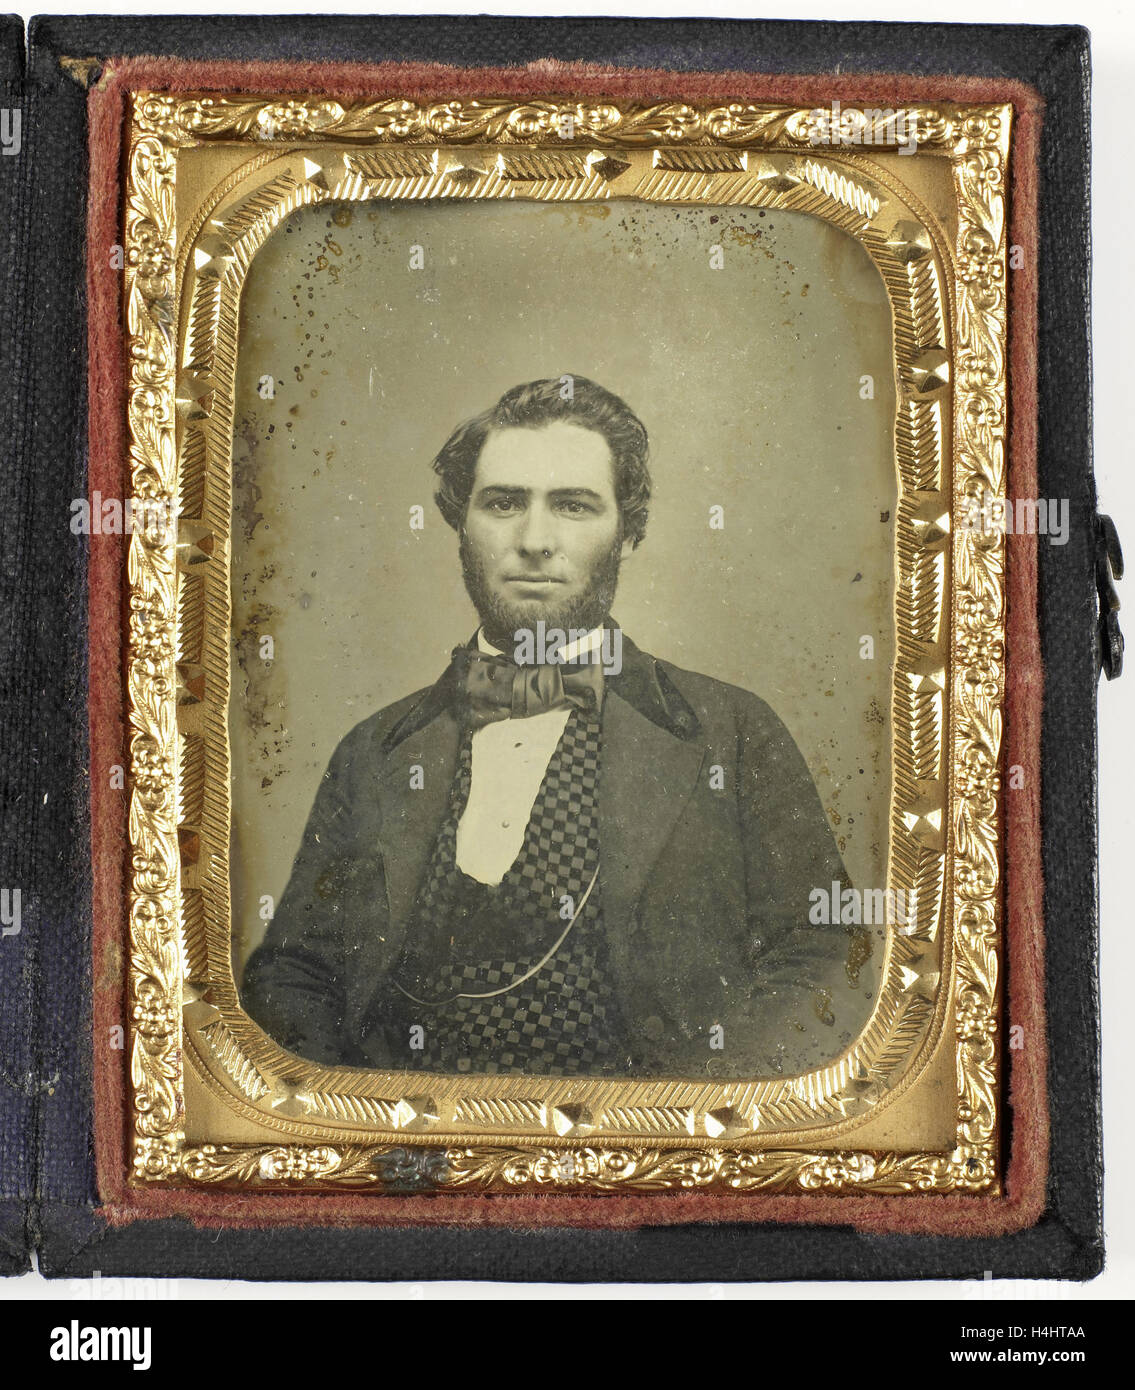 Retrato de un hombre barbado, anónimos, c. 1840 - c. 1860 Foto de stock